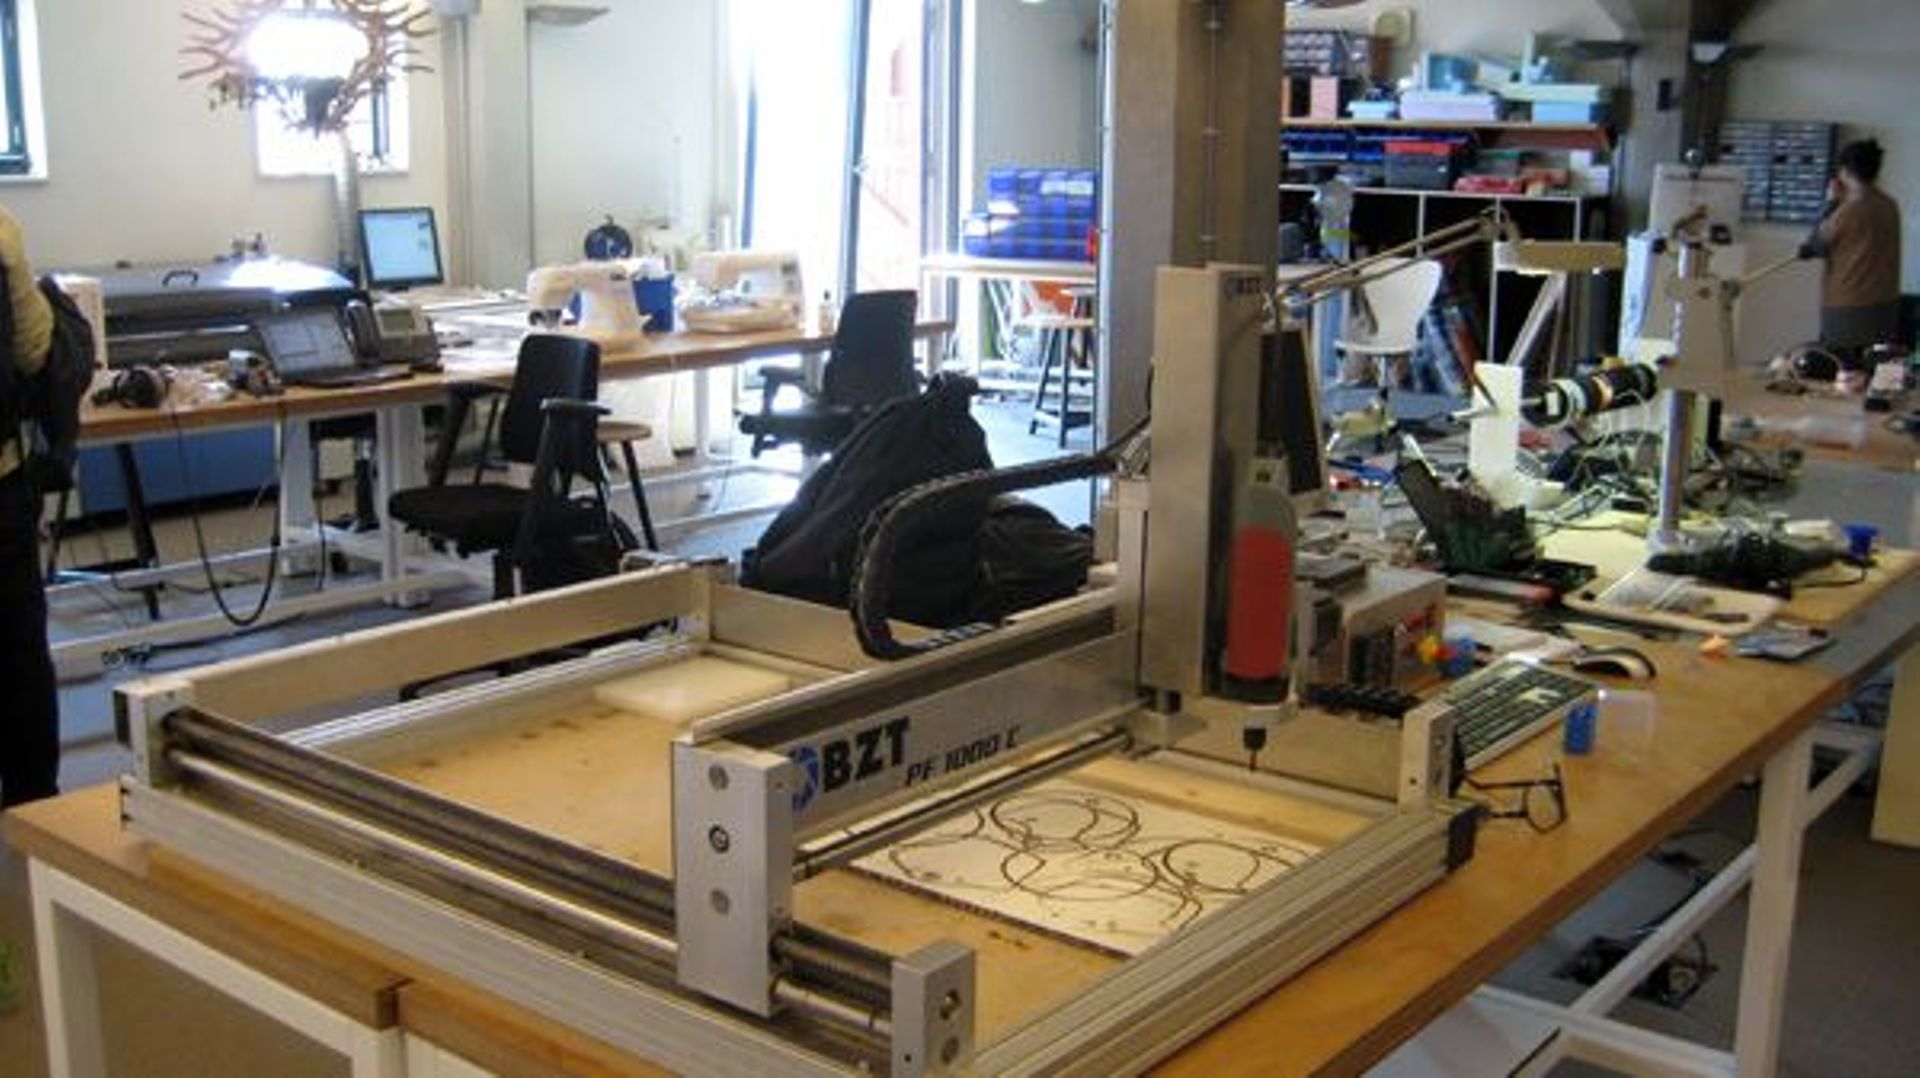 Visite dans un Fab-Lab, un atelier de fabrication numérique collaboratif.